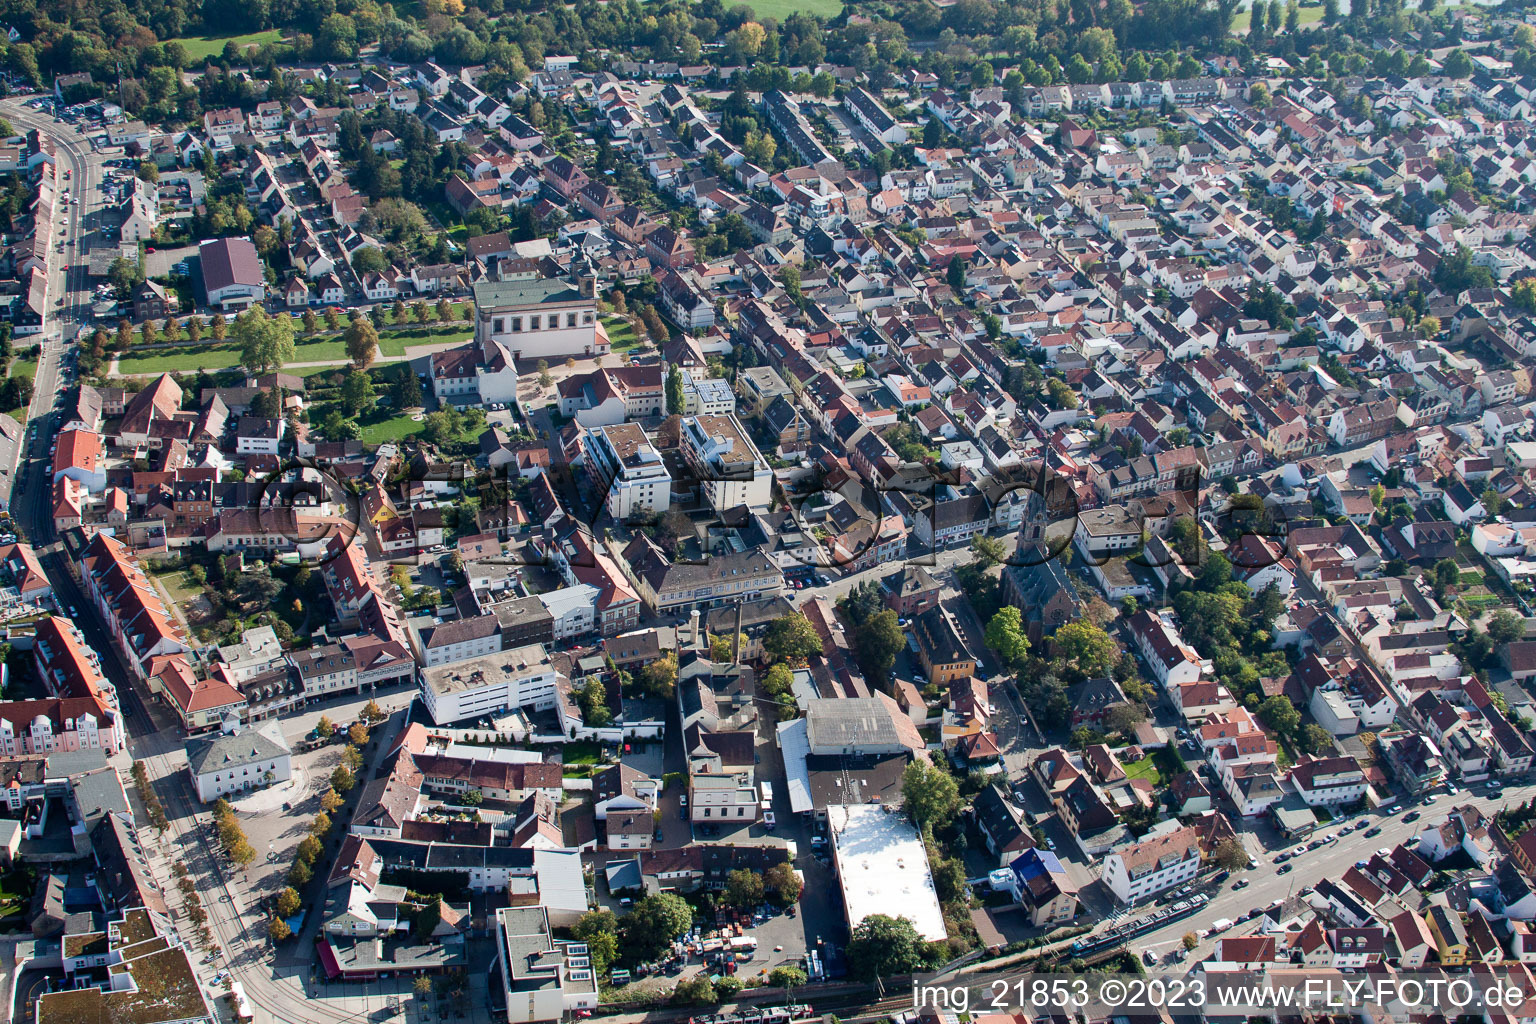 Luftbild von Ortsteil Oggersheim in Ludwigshafen am Rhein im Bundesland Rheinland-Pfalz, Deutschland